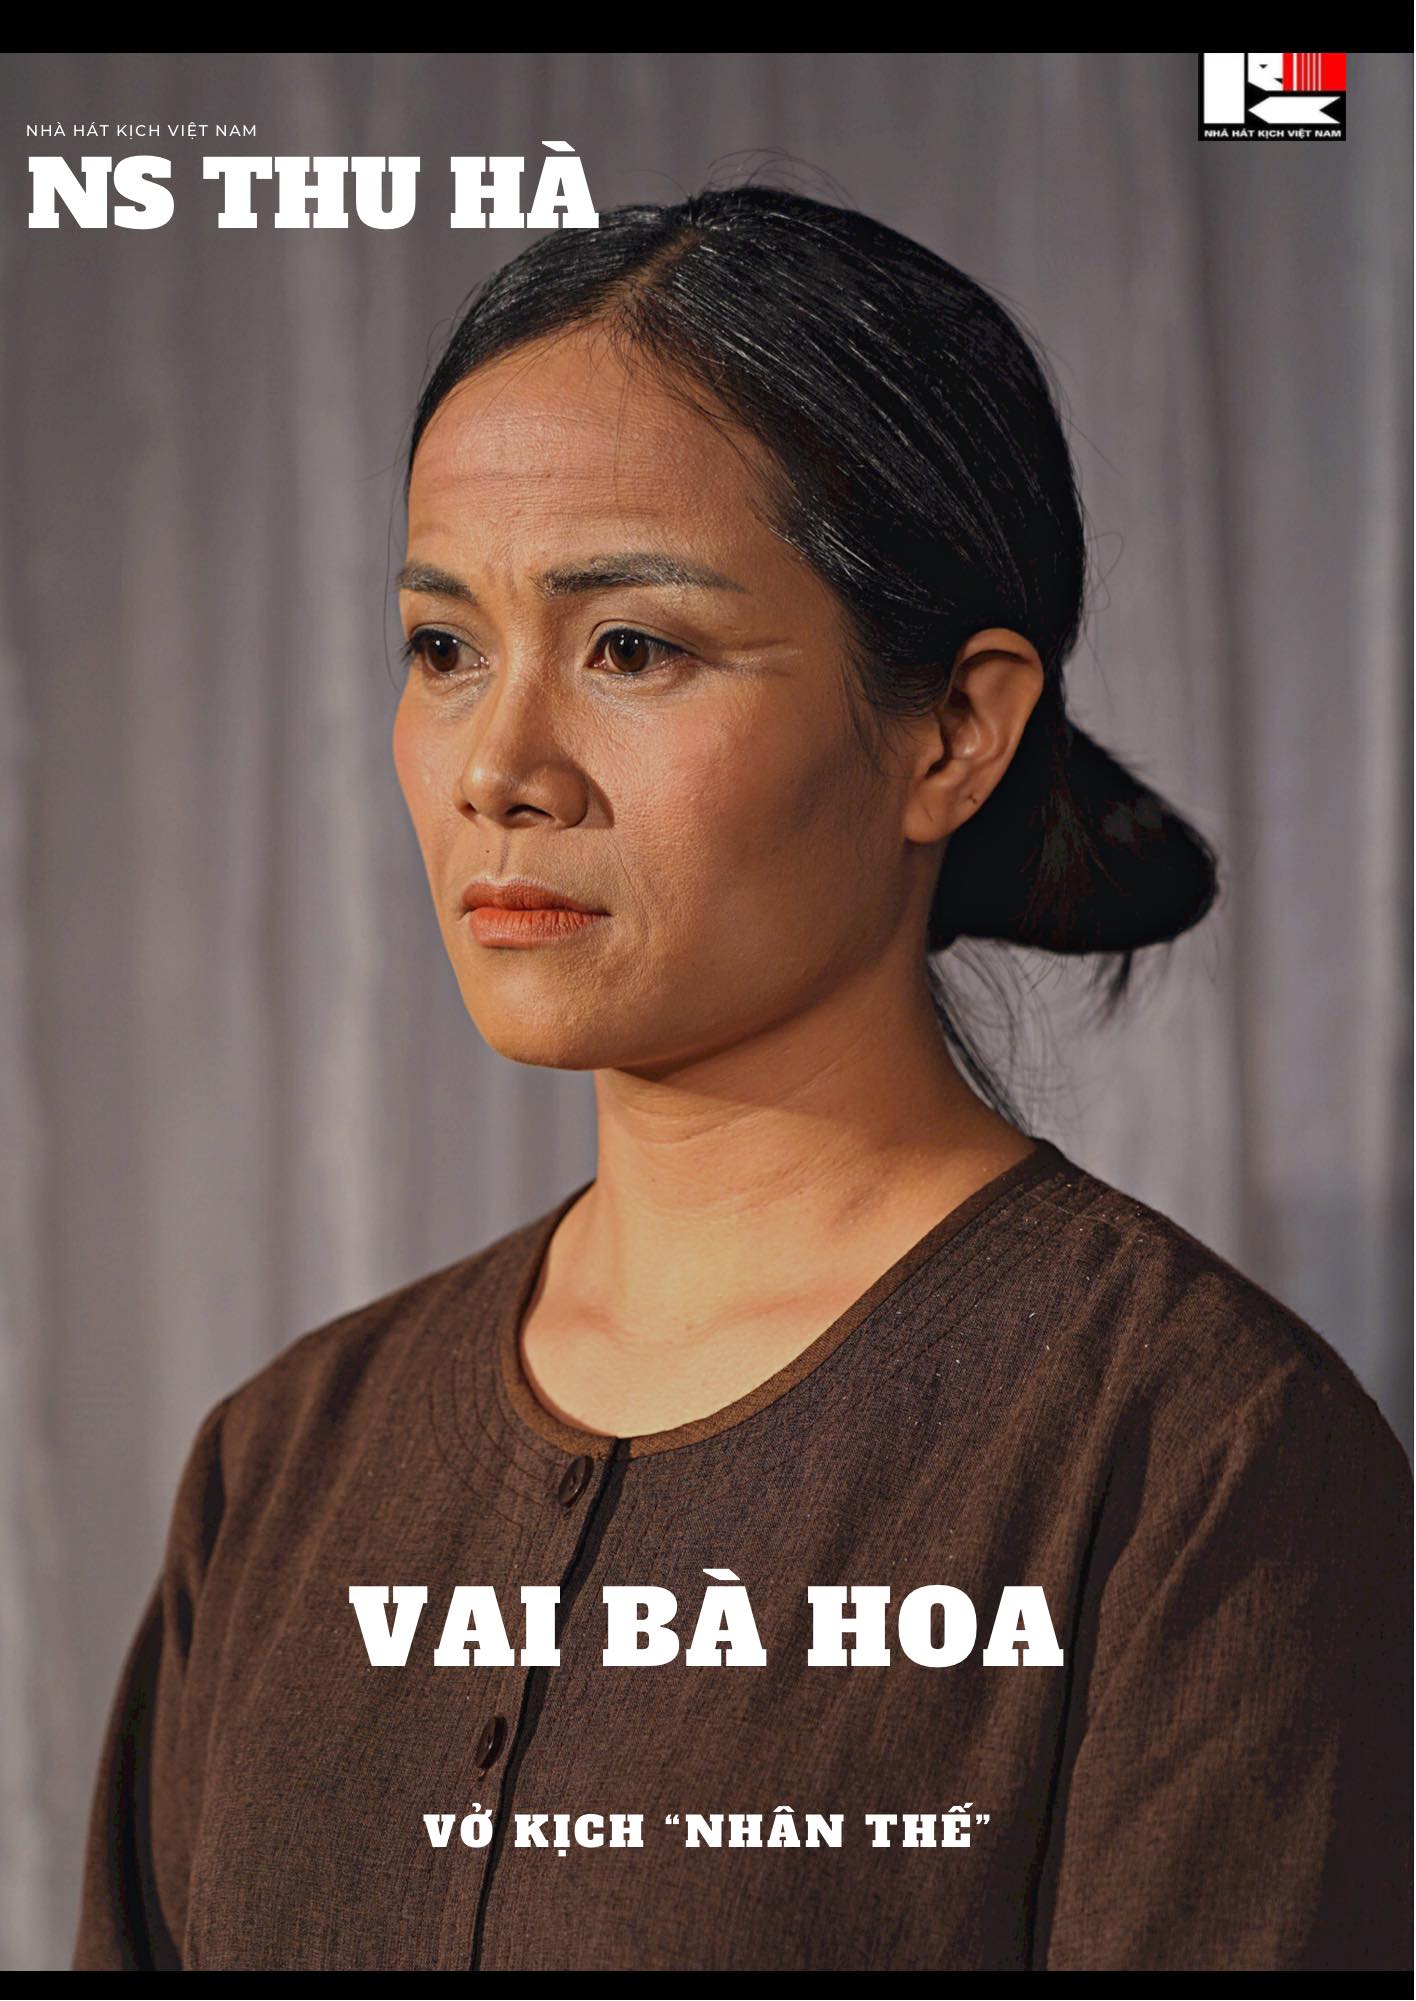 "Bà cô bên chồng đáng ghét nhất" màn ảnh Việt vừa được phong tặng danh hiệu NSƯT là ai?- Ảnh 2.